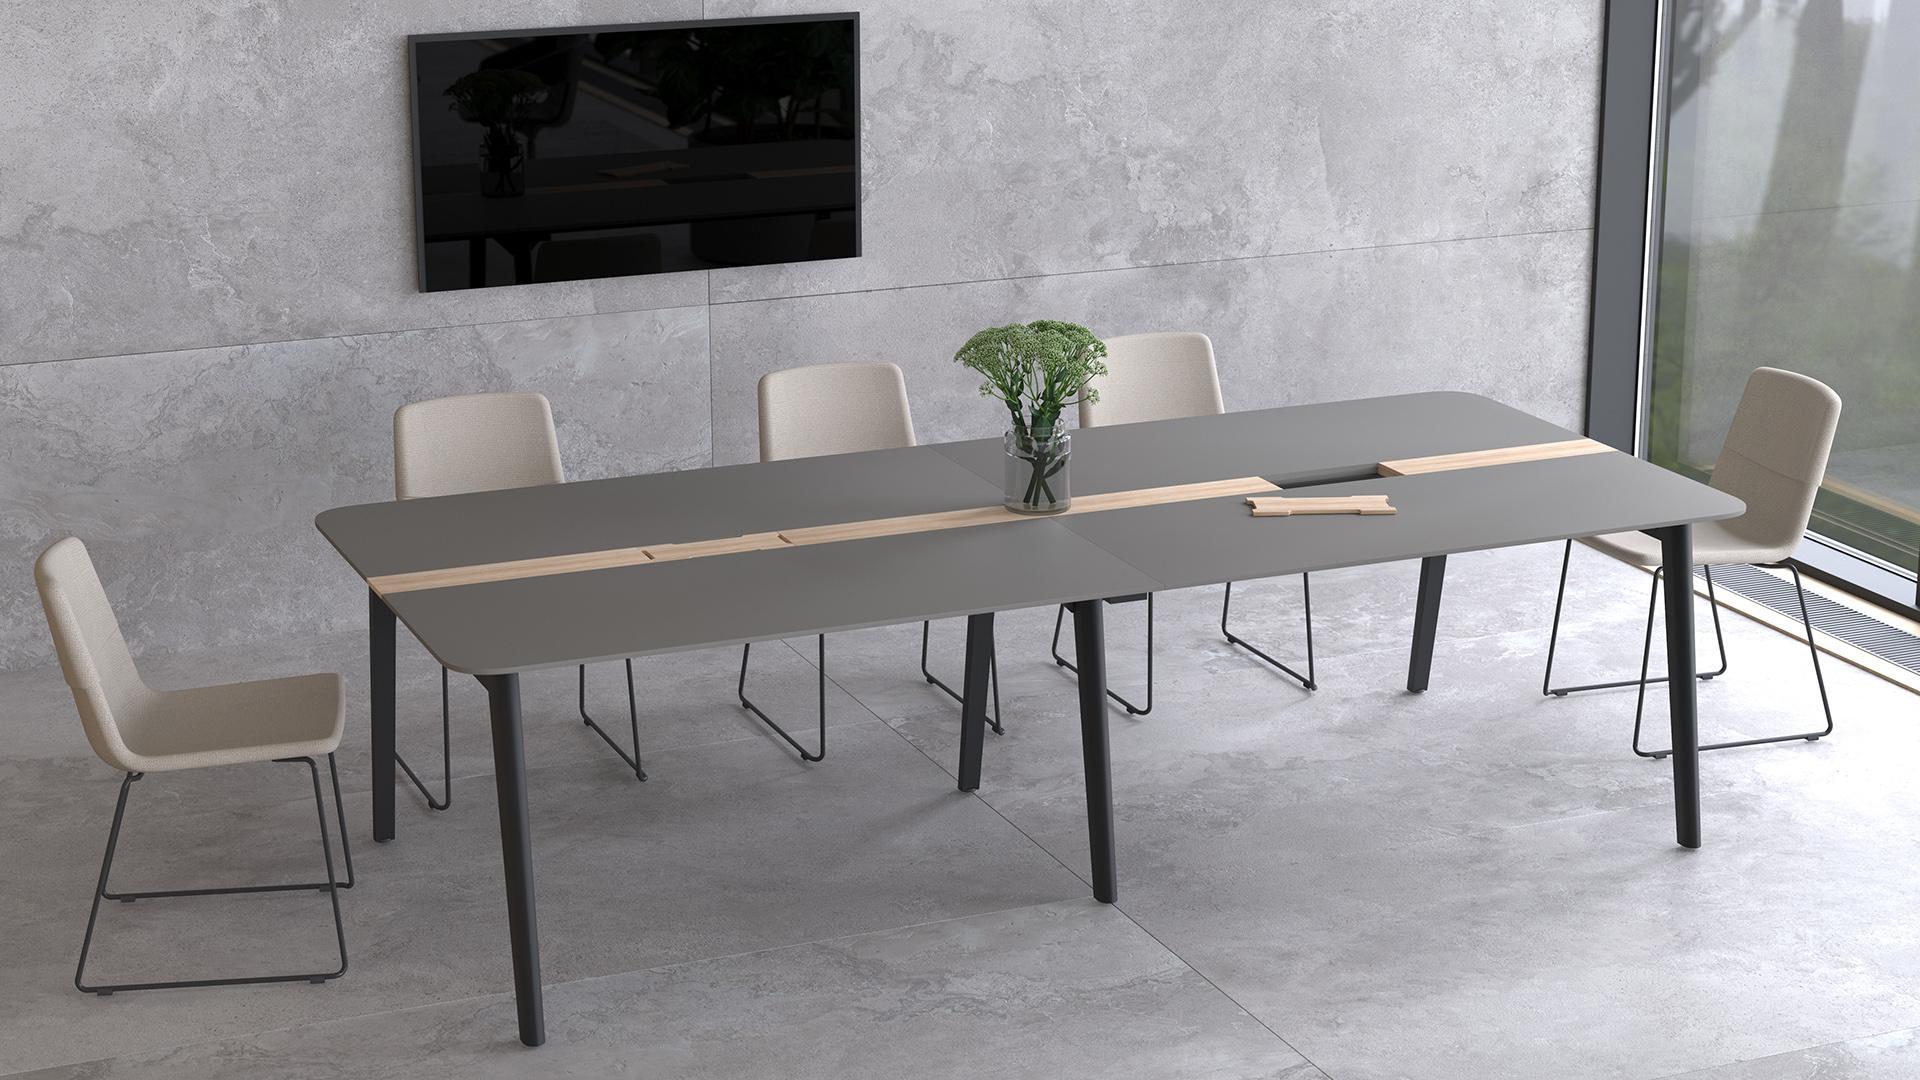 Konferenzstuhl / Kufenstühle stapelbar - Tischbeine aus Vollholz / Metall ǀ TWIST&SIT